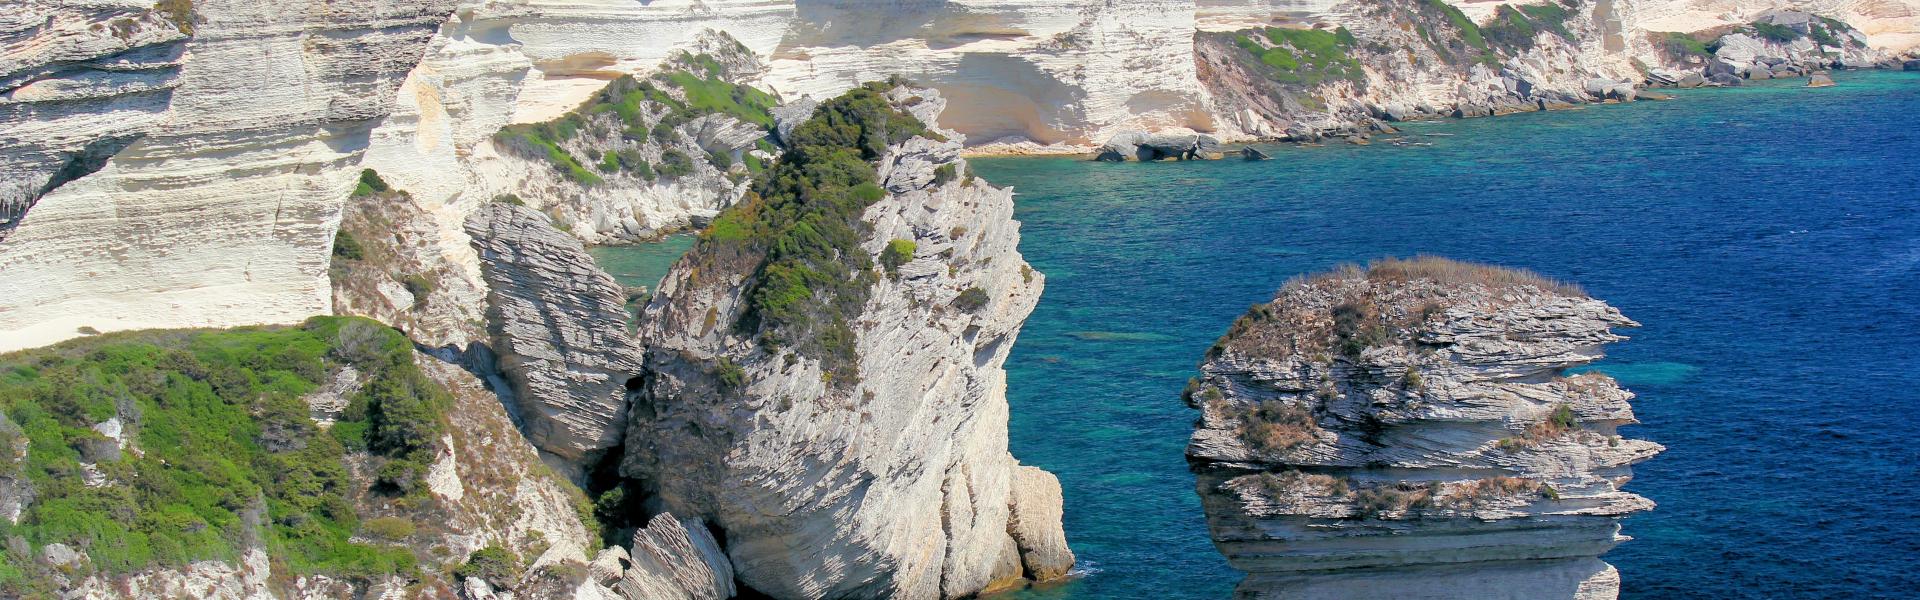 Location de vacances à Borgo - Haute-Corse - amivac